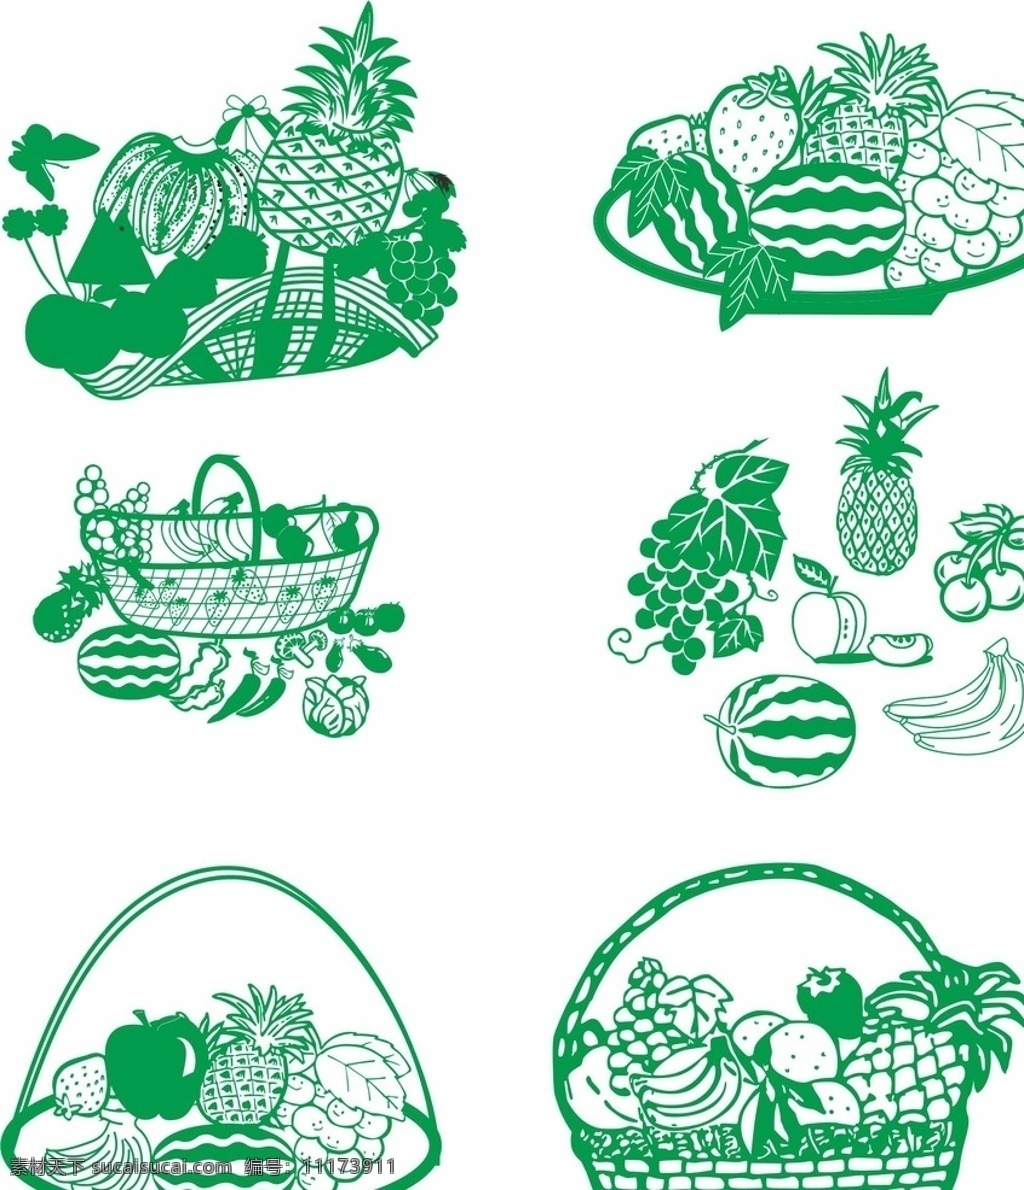 各种水果篮 水果 果篮 蔬菜 拼盘 篮子 植物 食物 插画 矢量图 水果萌 标志图标 其他图标